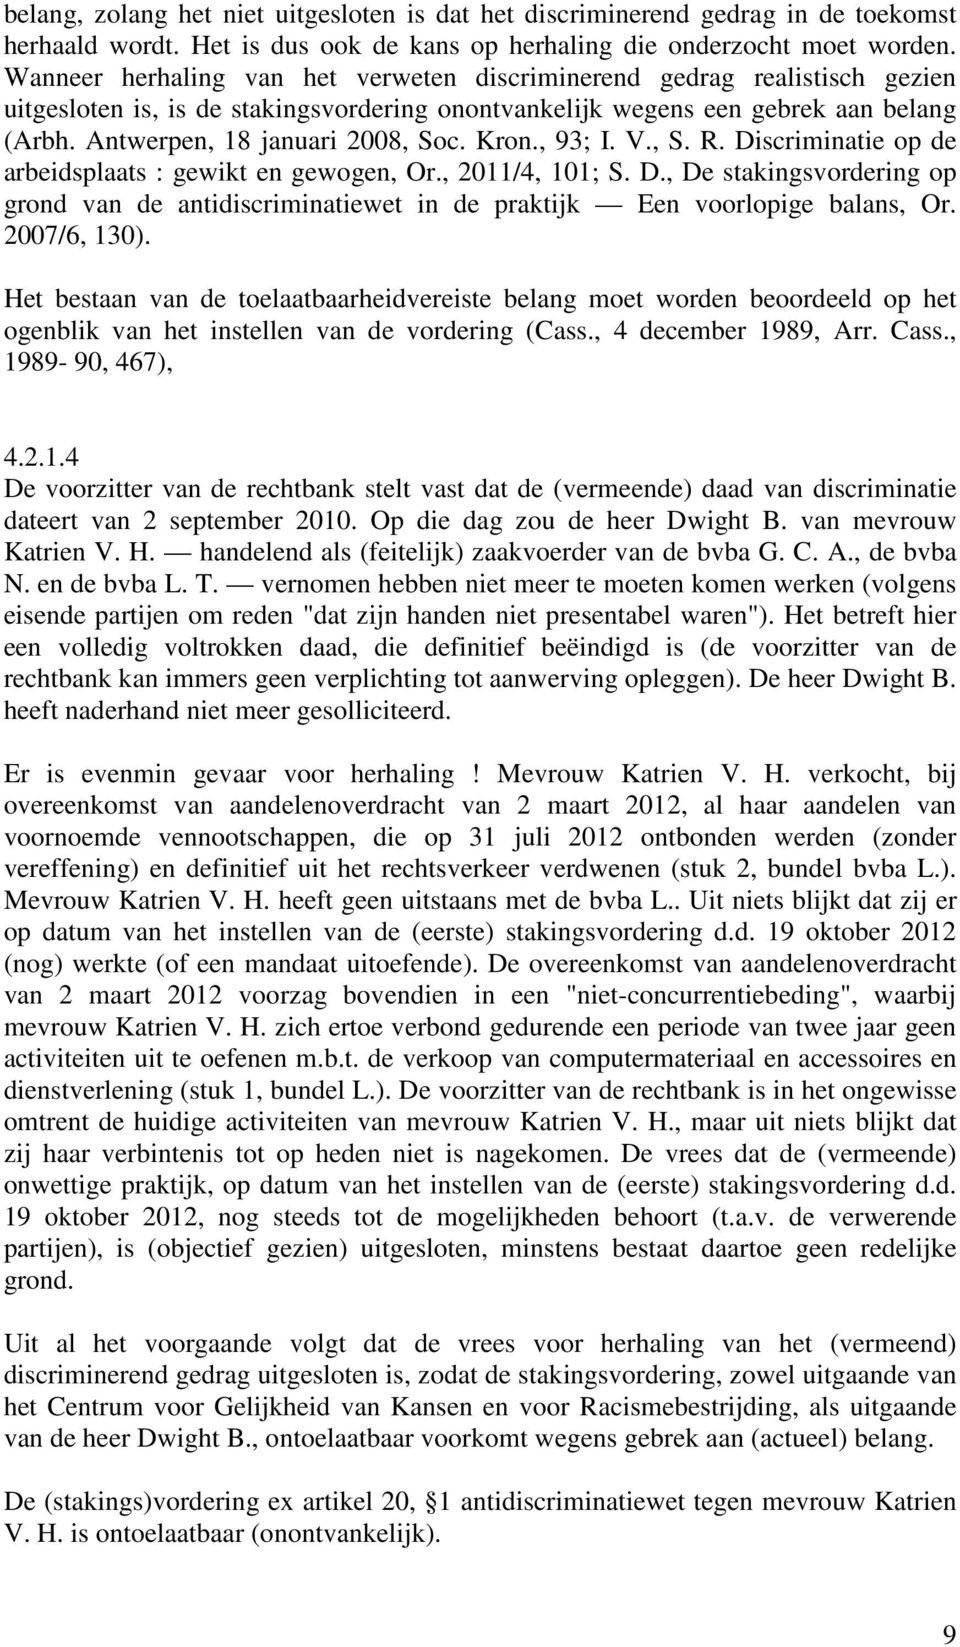 Kron., 93; I. V., S. R. Discriminatie op de arbeidsplaats : gewikt en gewogen, Or., 2011/4, 101; S. D., De stakingsvordering op grond van de antidiscriminatiewet in de praktijk Een voorlopige balans, Or.